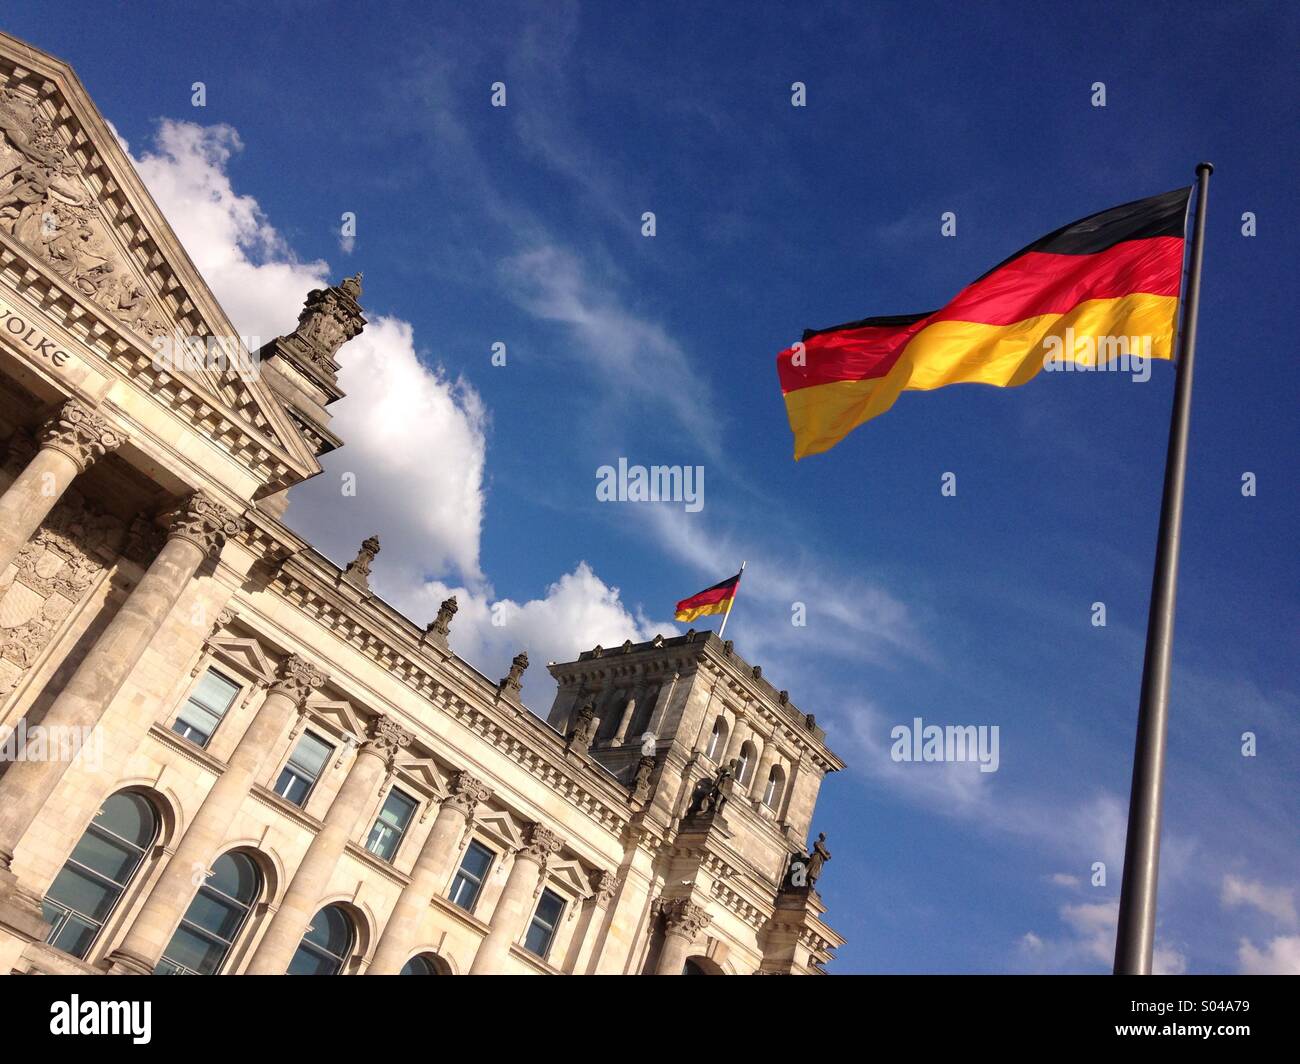 Германия дополнительная информация. Германия флаг университет. Флаг Германии на Рейхстаге. Германия флаг Бундестаг. Флаг Мюнхена Германия.